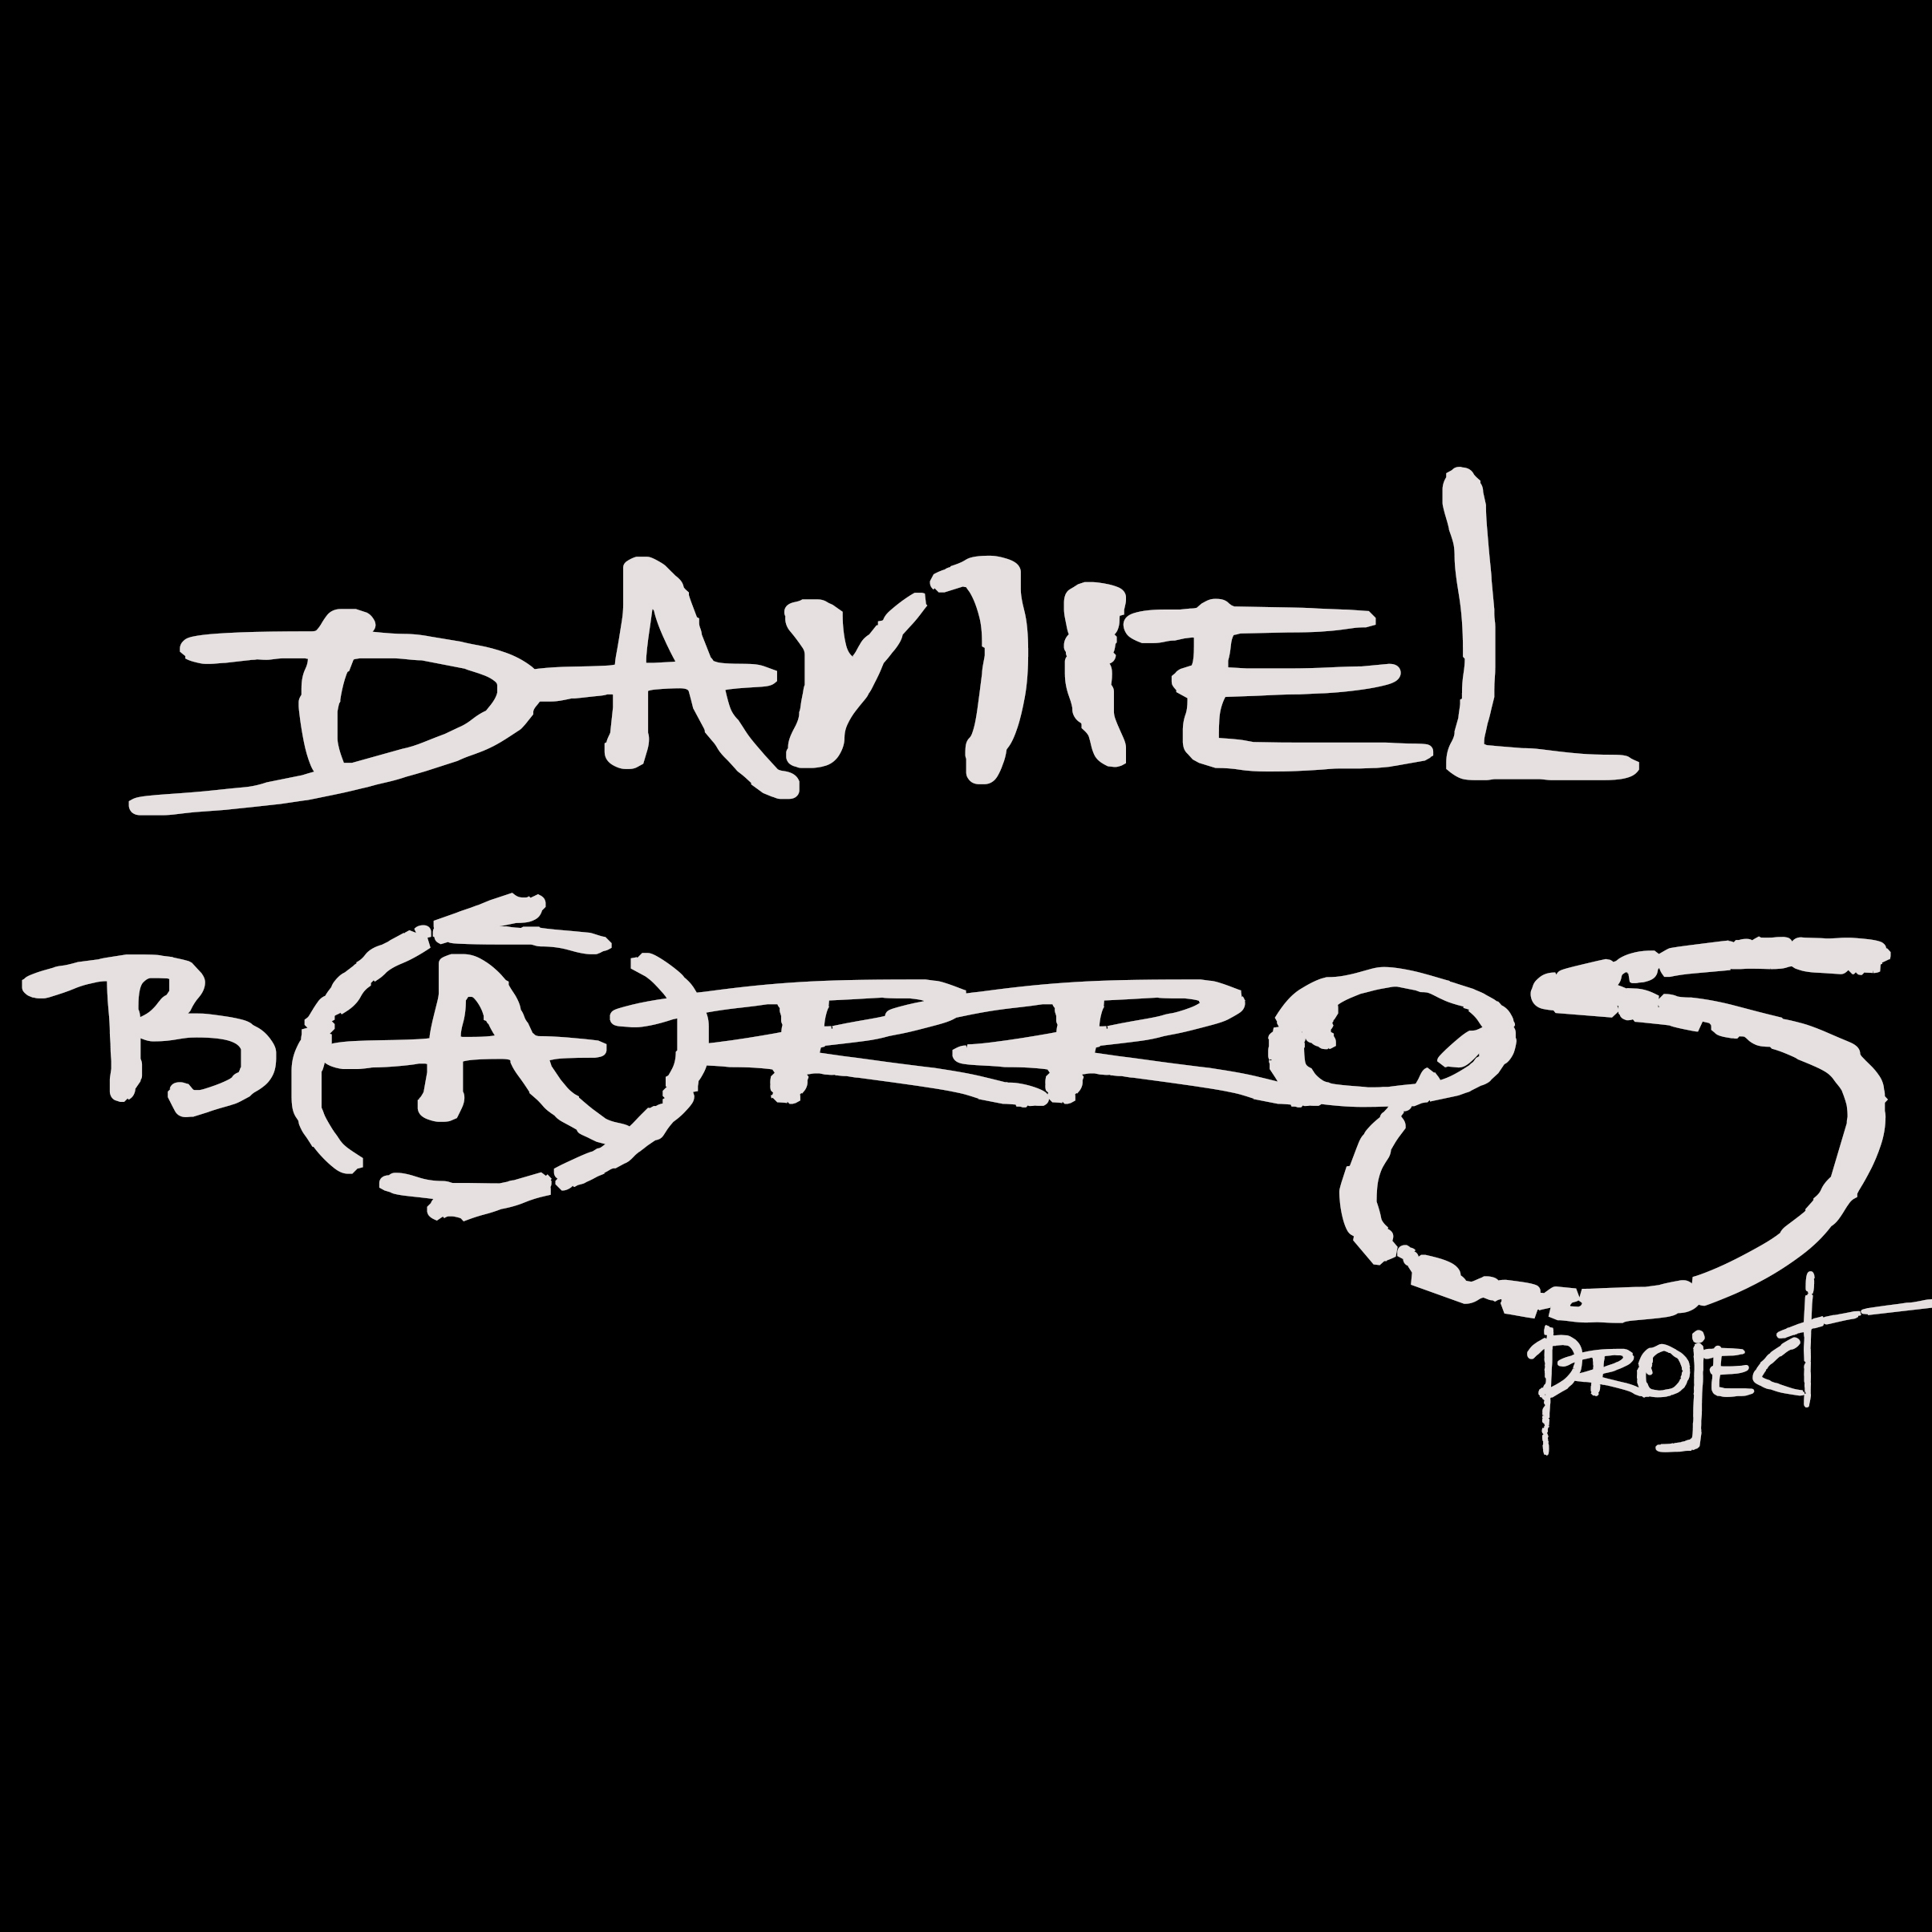 Daniel Barros Project